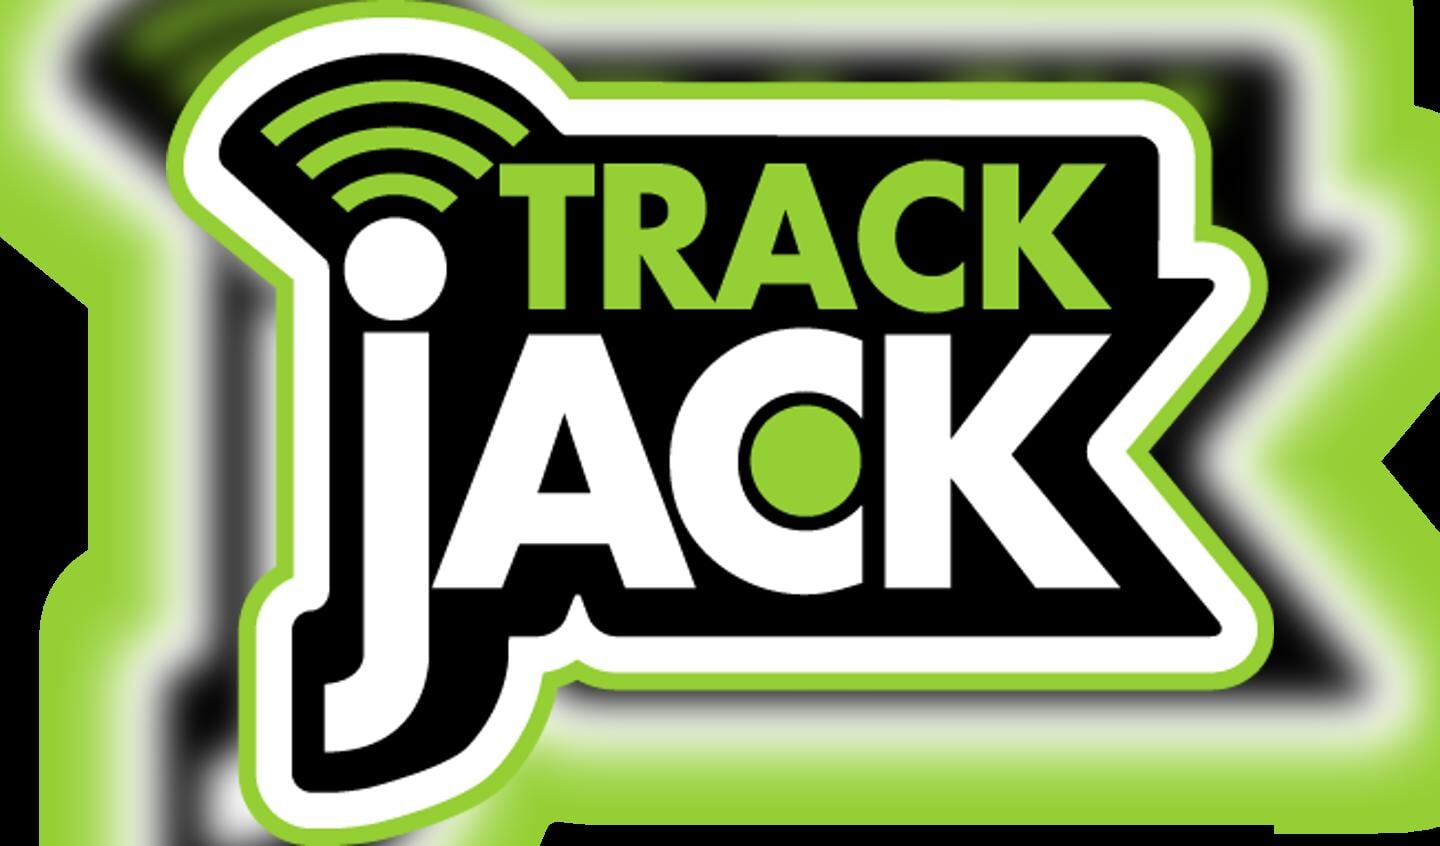 ||TrackJack Europe biedt samen met haar partners unieke kortingen aan zowel bestaande als nieuwe afnemers.